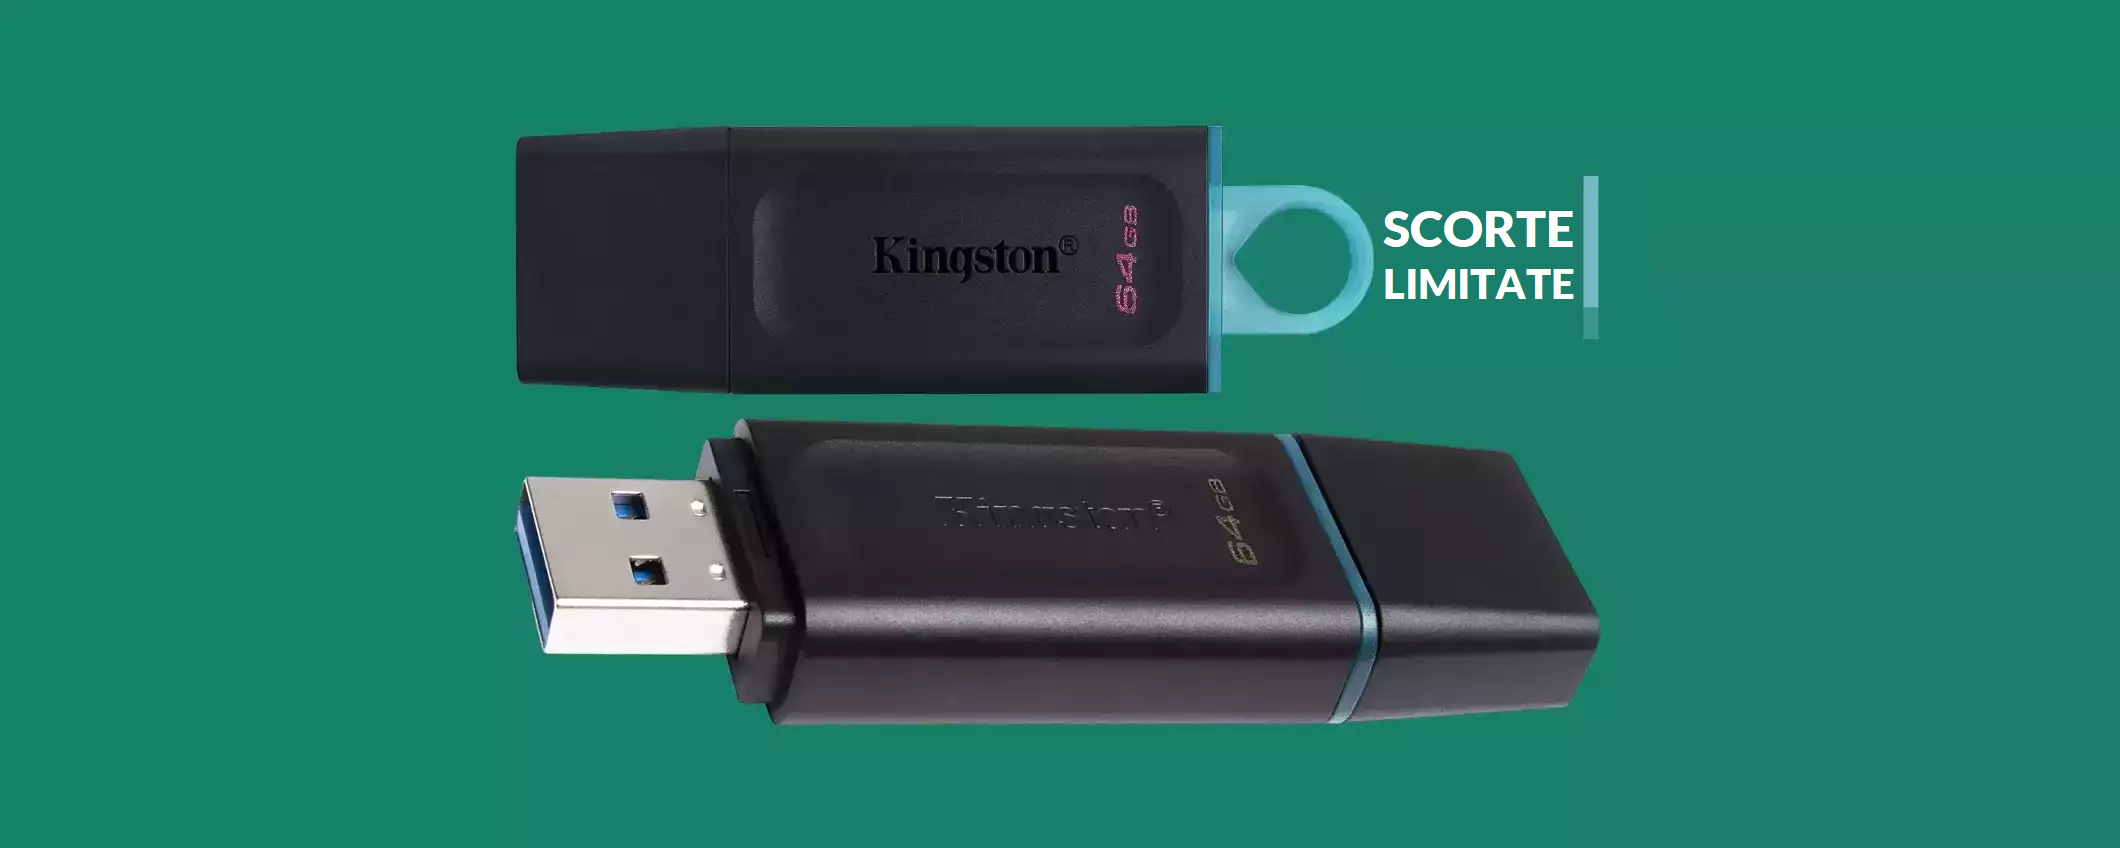 Chiavetta USB 64GB ad appena 6€: Kingston è una GARANZIA